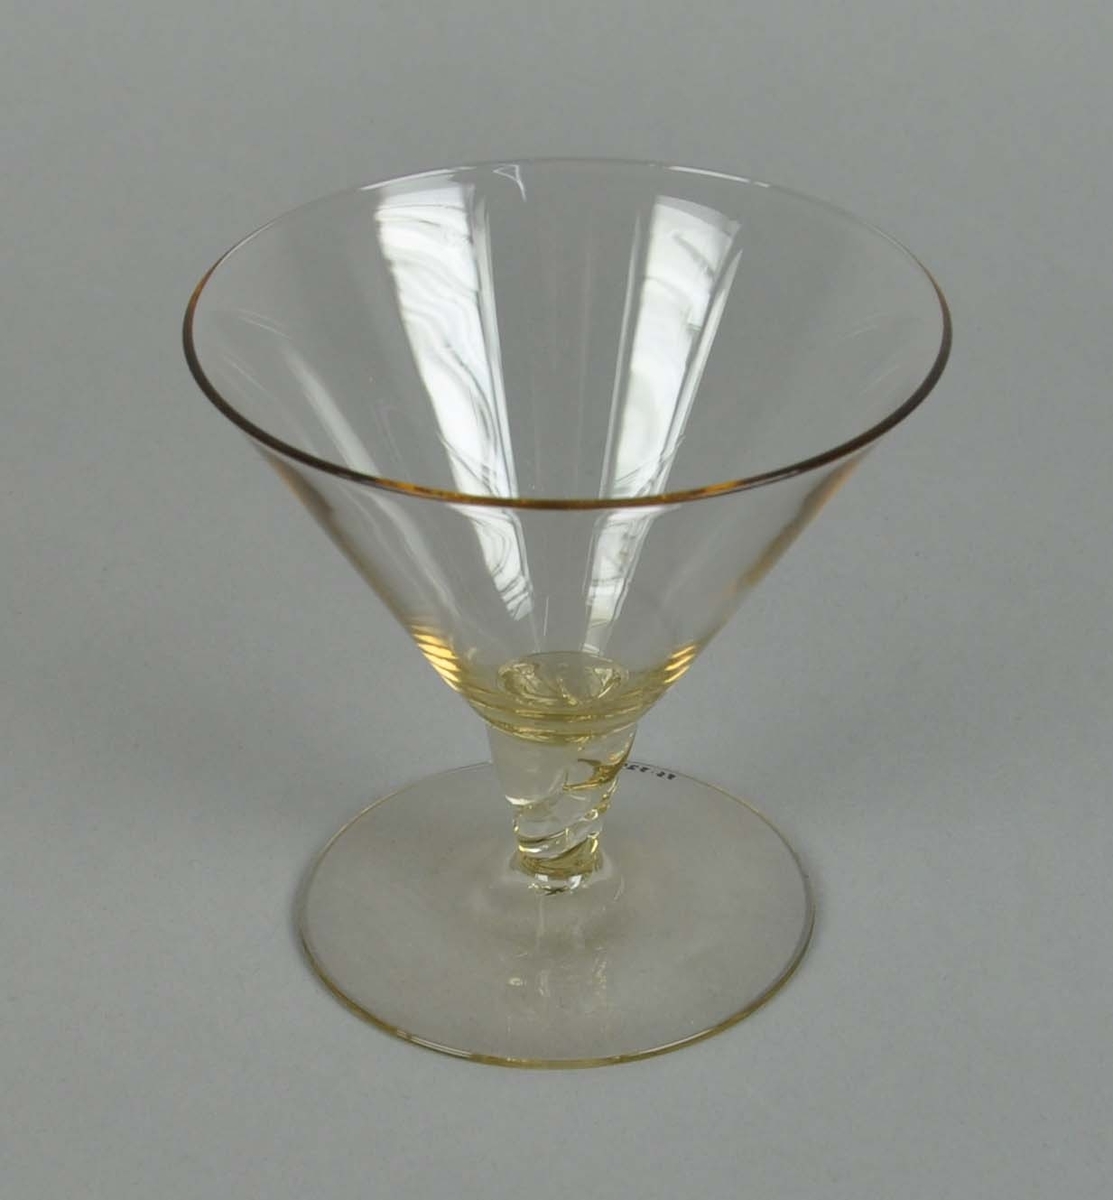 Coctailglass av gult glass. Glasset har y-form med spiralisert stett.